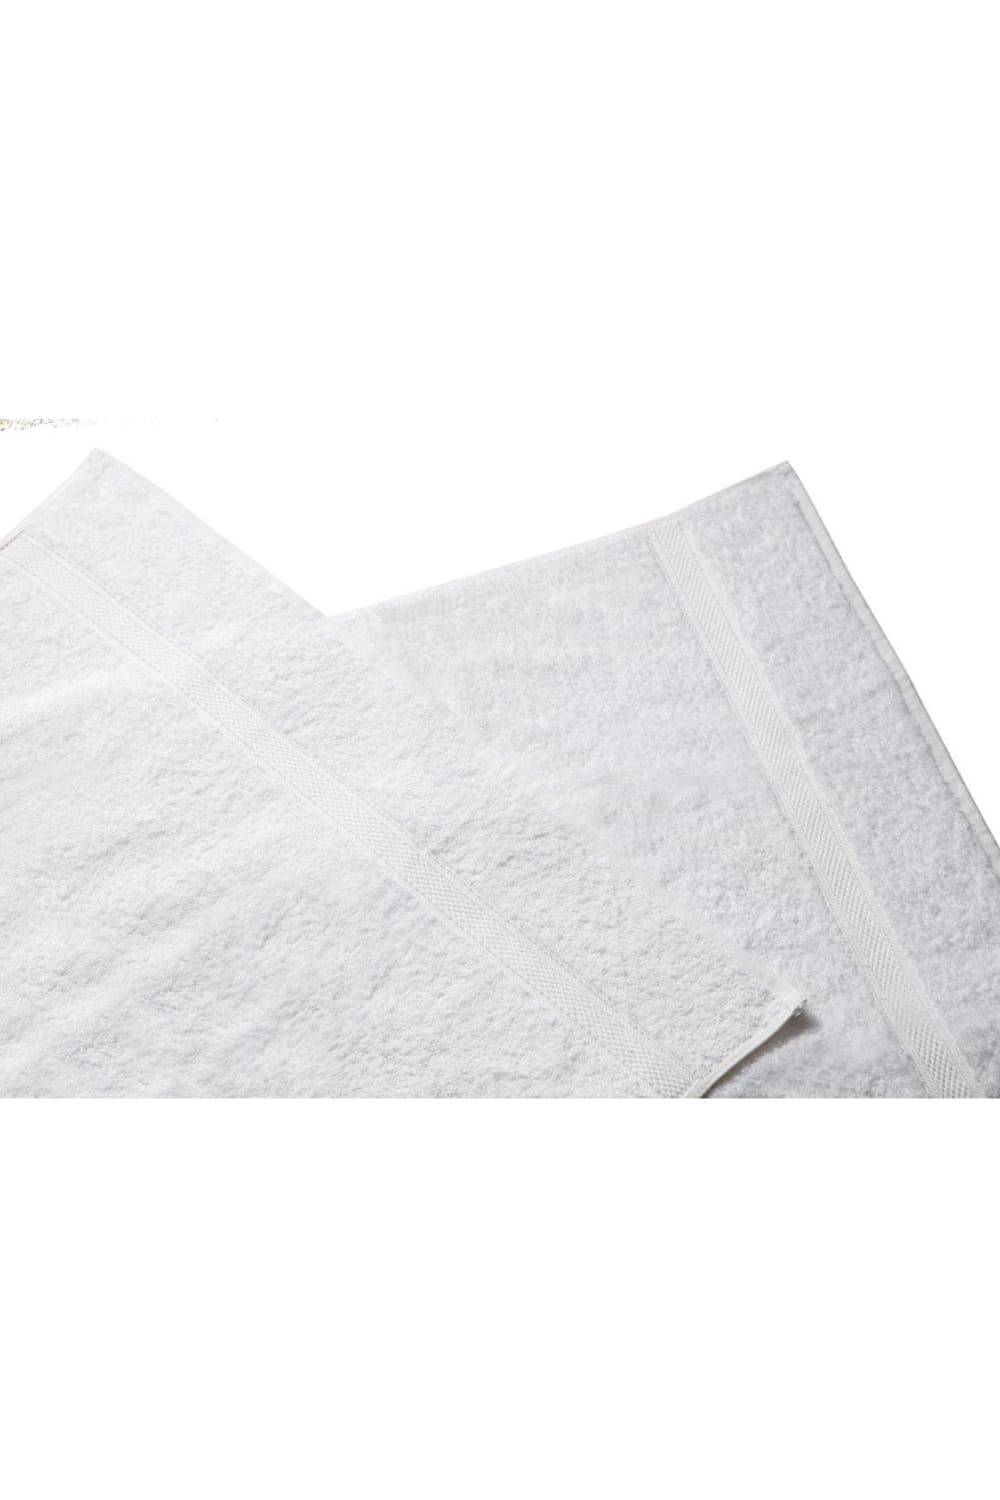 Belledorm Hotel Madison Bath Sheet (White) (One Size)